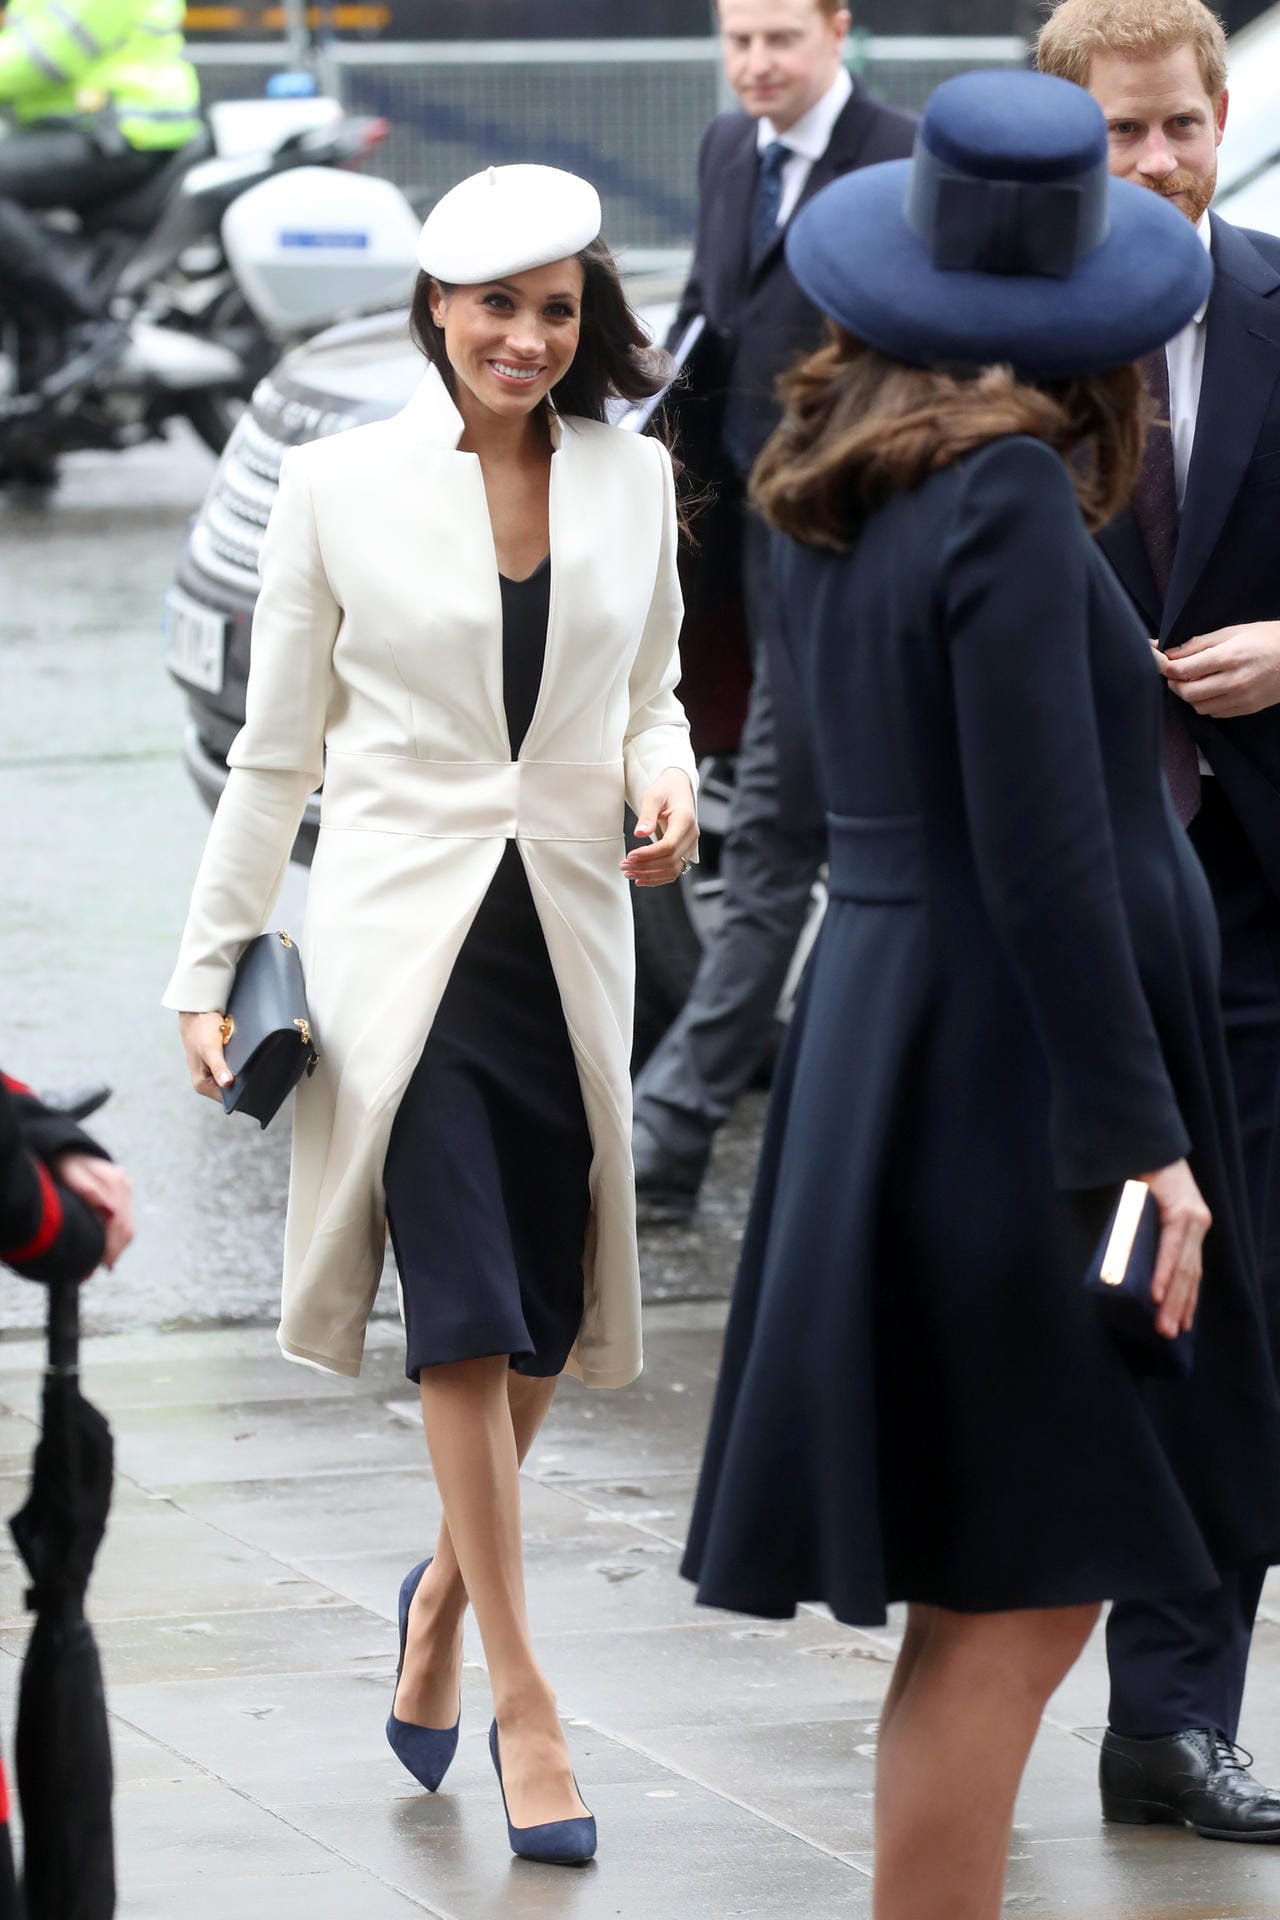 Gottesdienst in der Londoner Westminster Abbey im März 2018: Meghans Look harmoniert farblich perfekt mit dem von Kate.